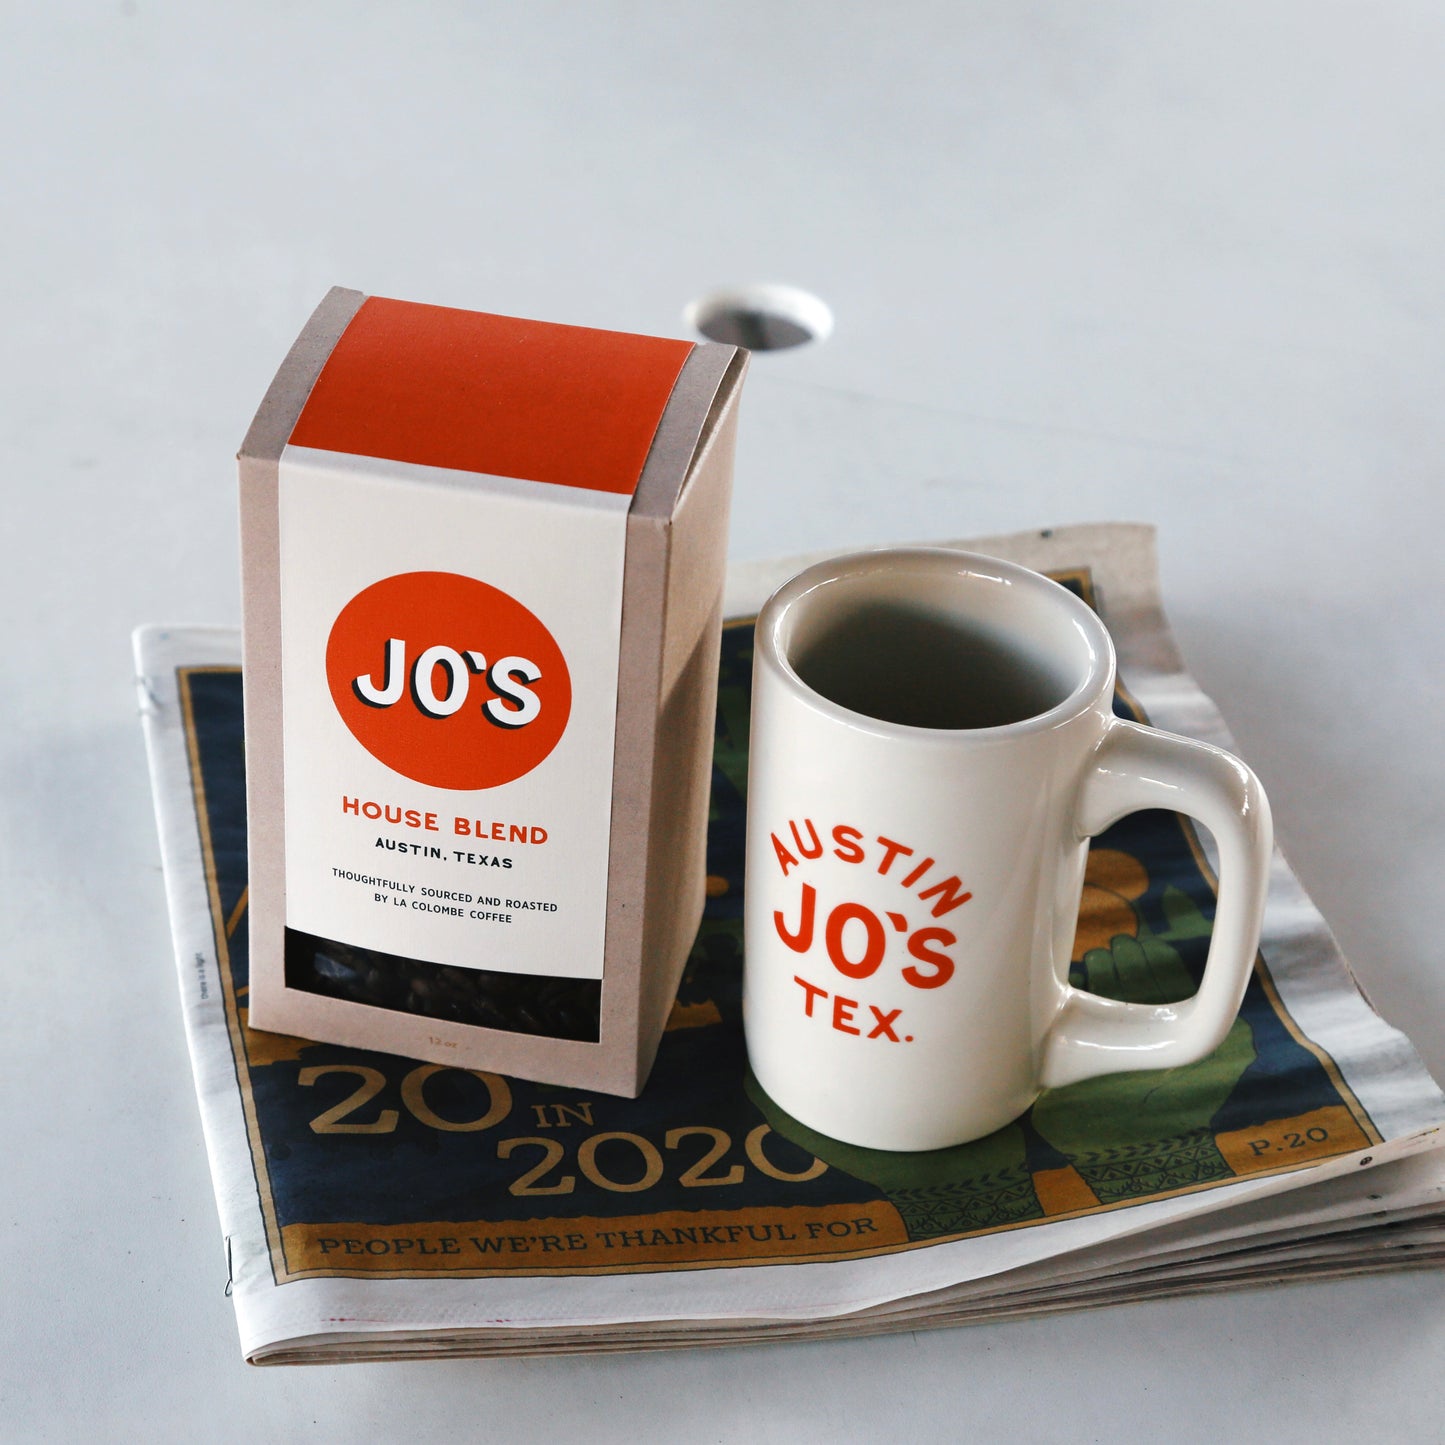 Jo's House Blend Coffee